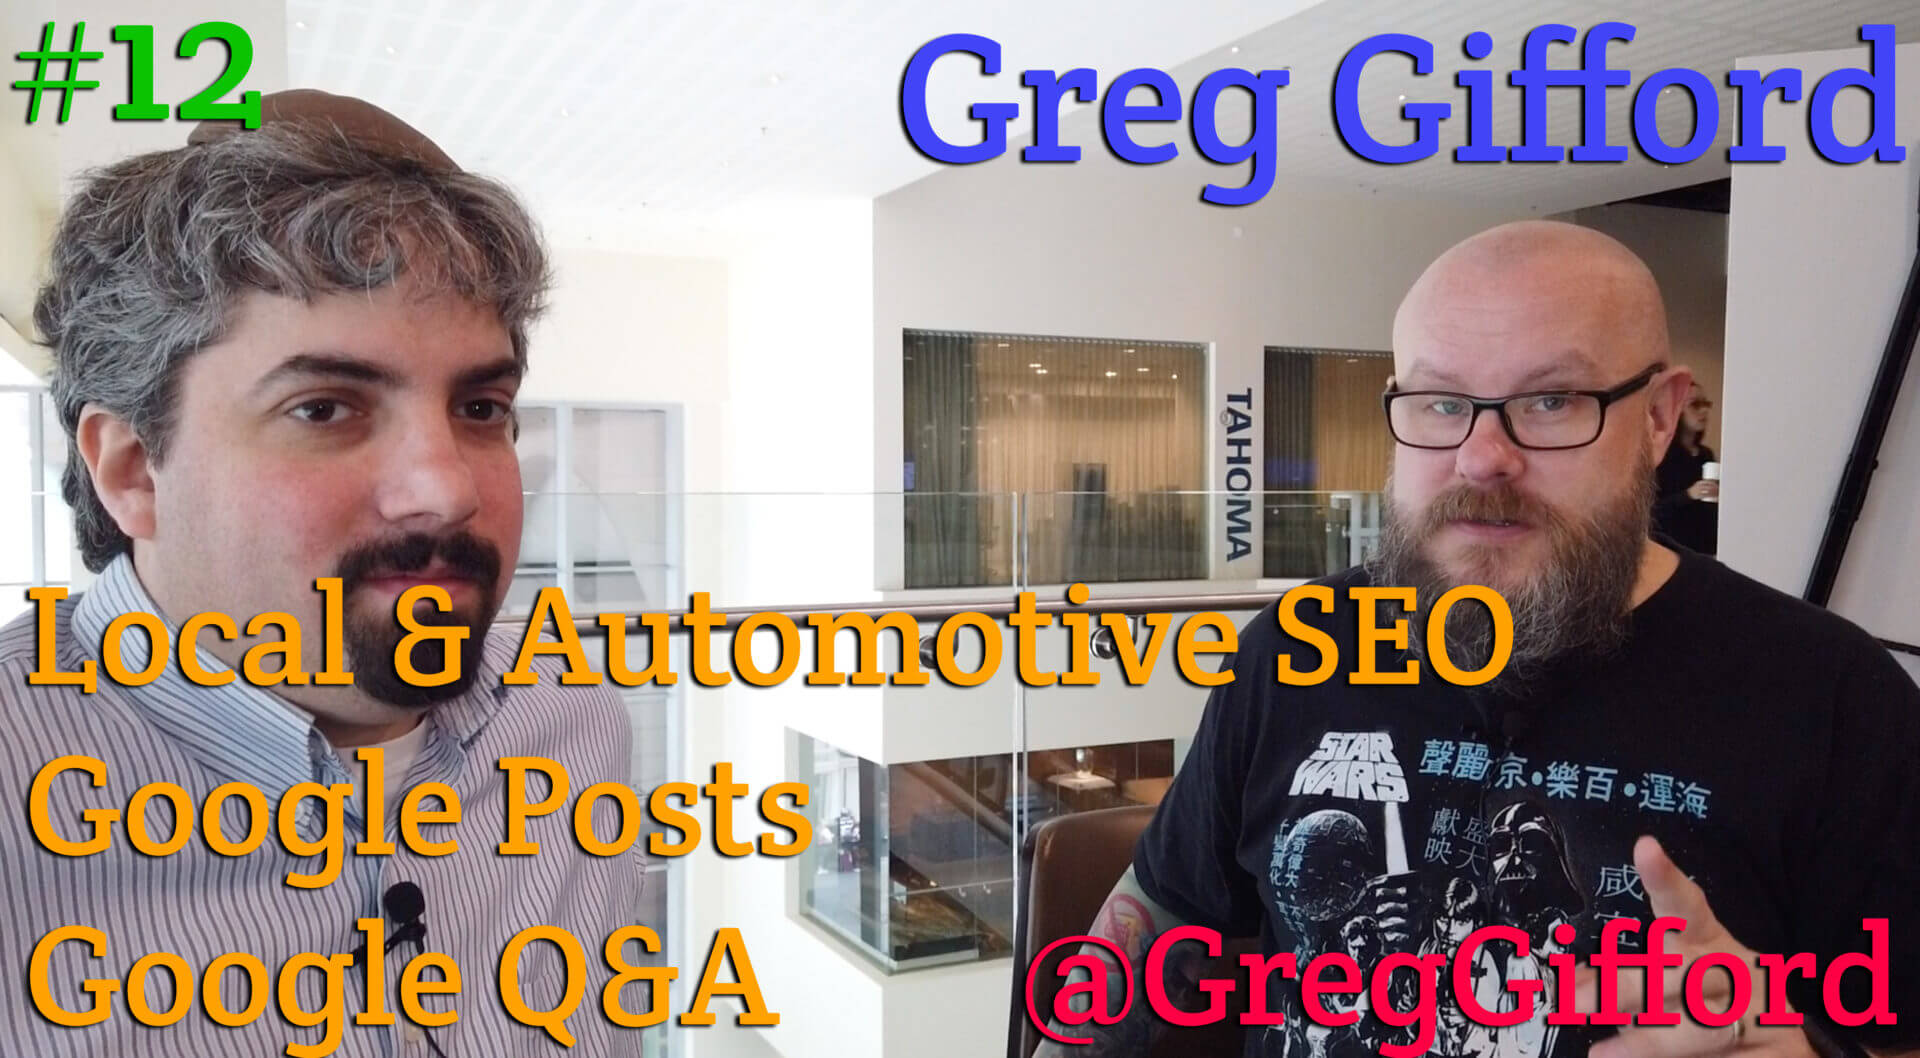 Video: Greg Gifford analiza las publicaciones de Google, las preguntas y respuestas de Google y el SEO local